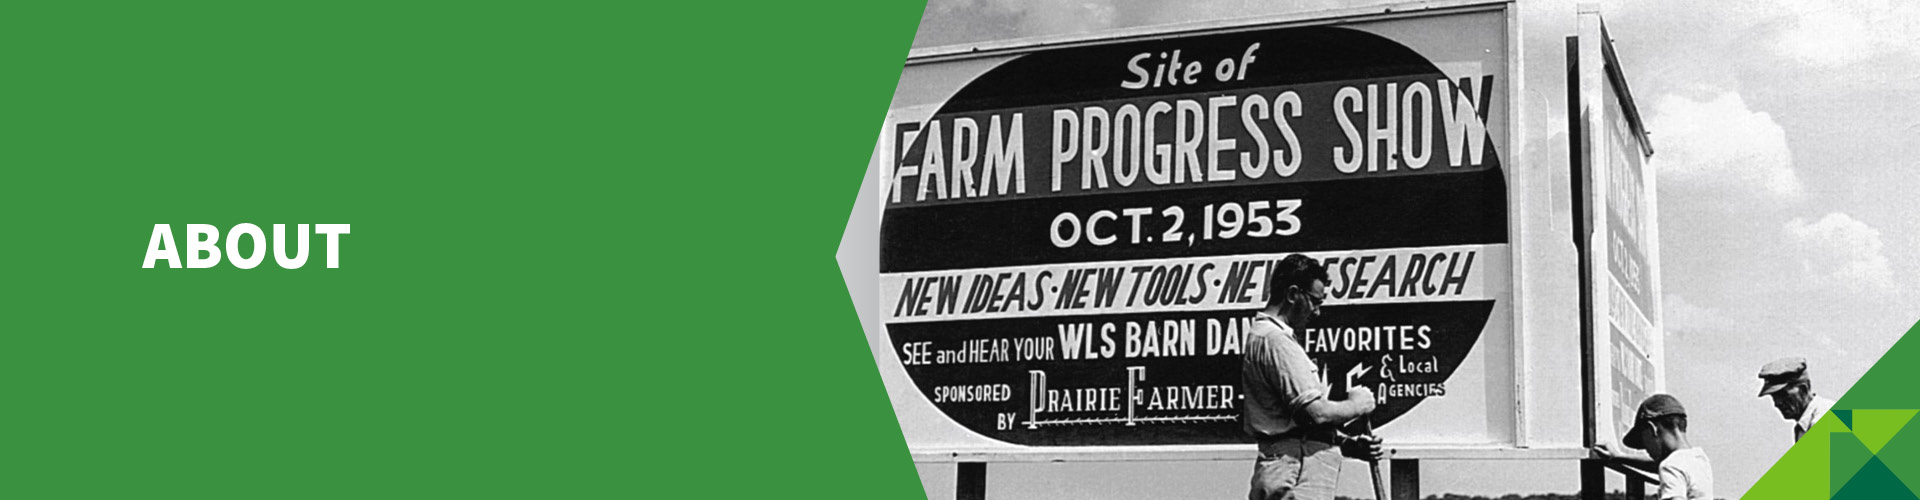 Field Demos at Farm Progress Show